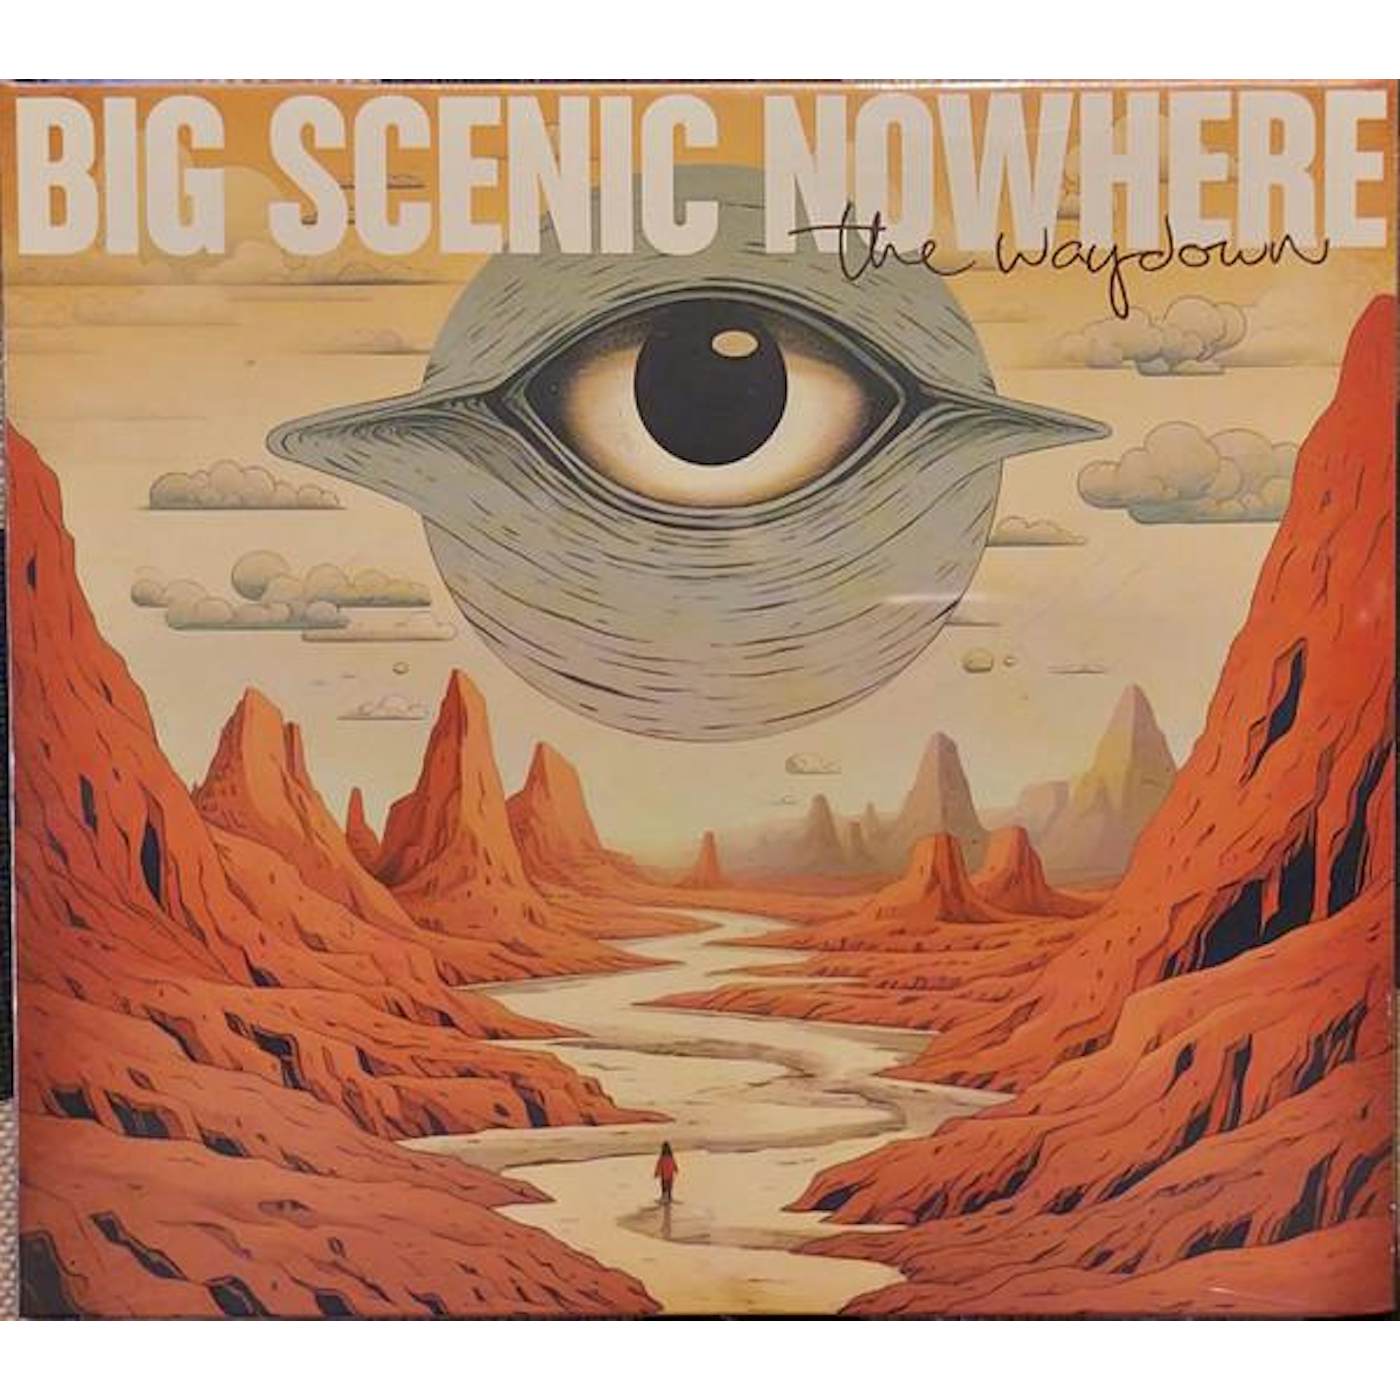 Big Scenic Nowhere WAYDOWN CD